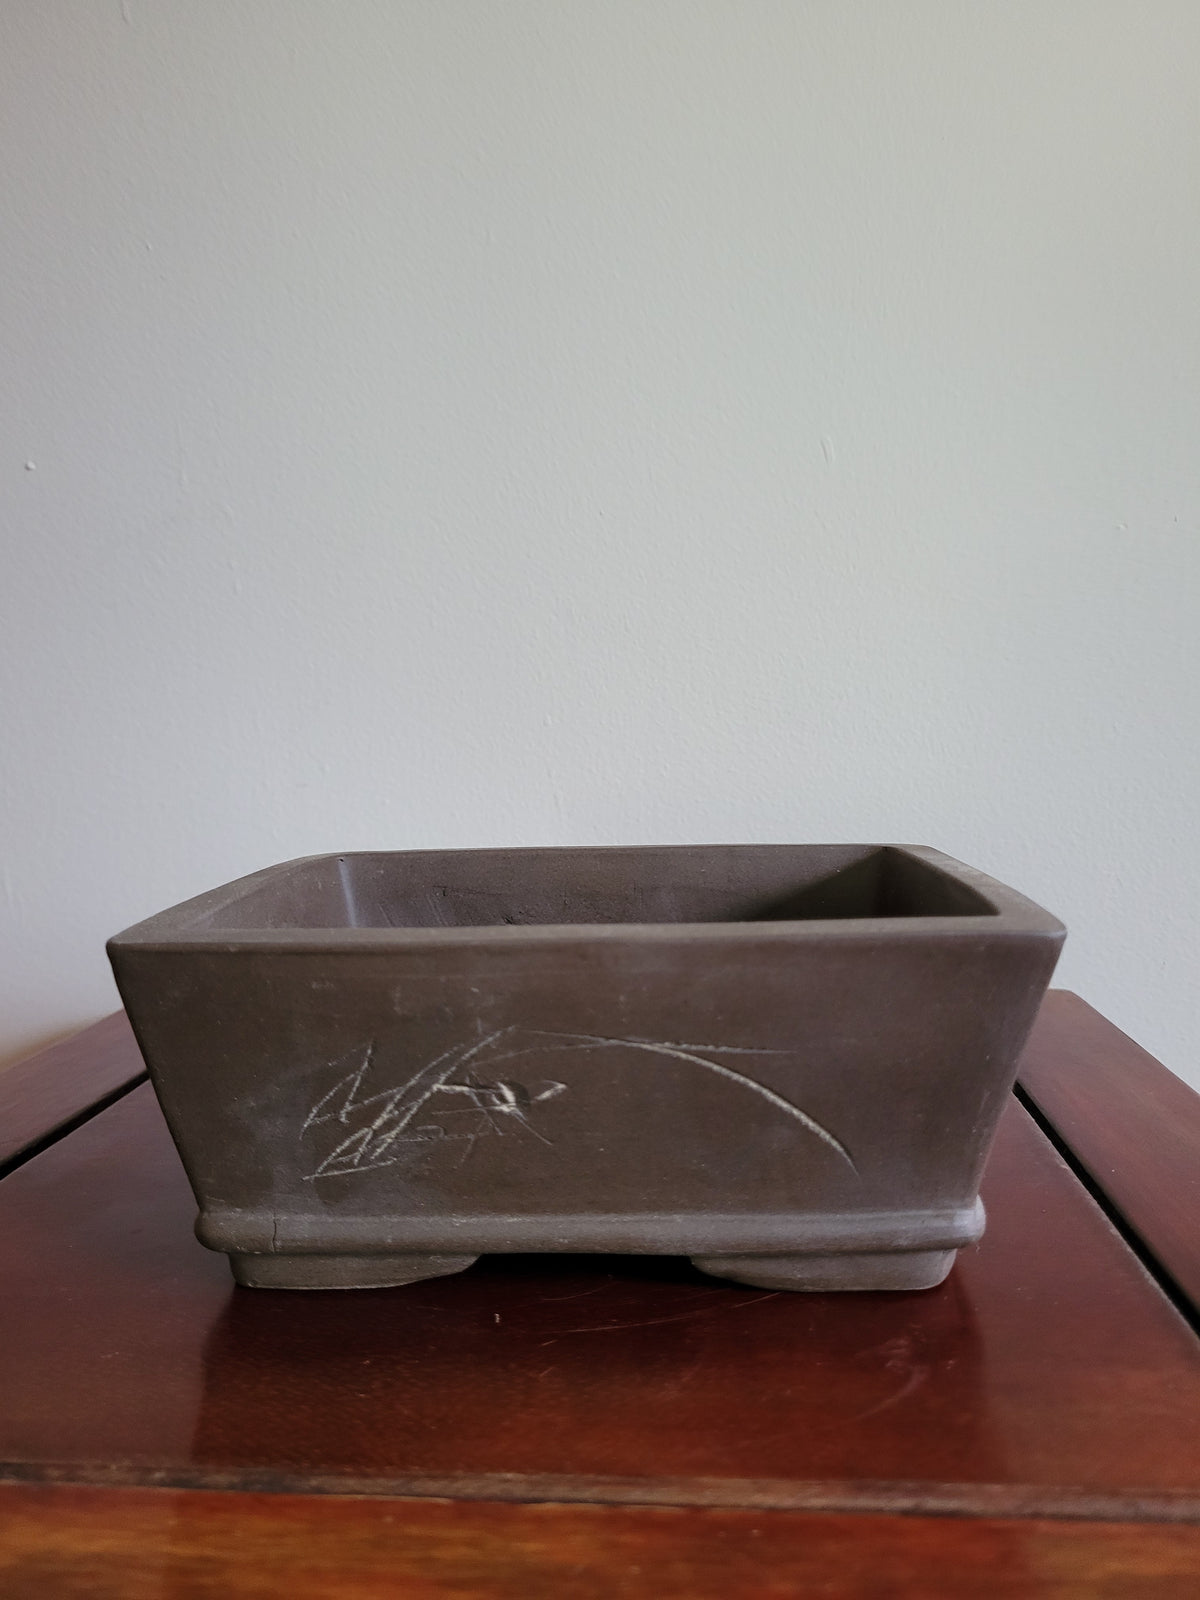 6" Unglazed etched chinese rectangular pot